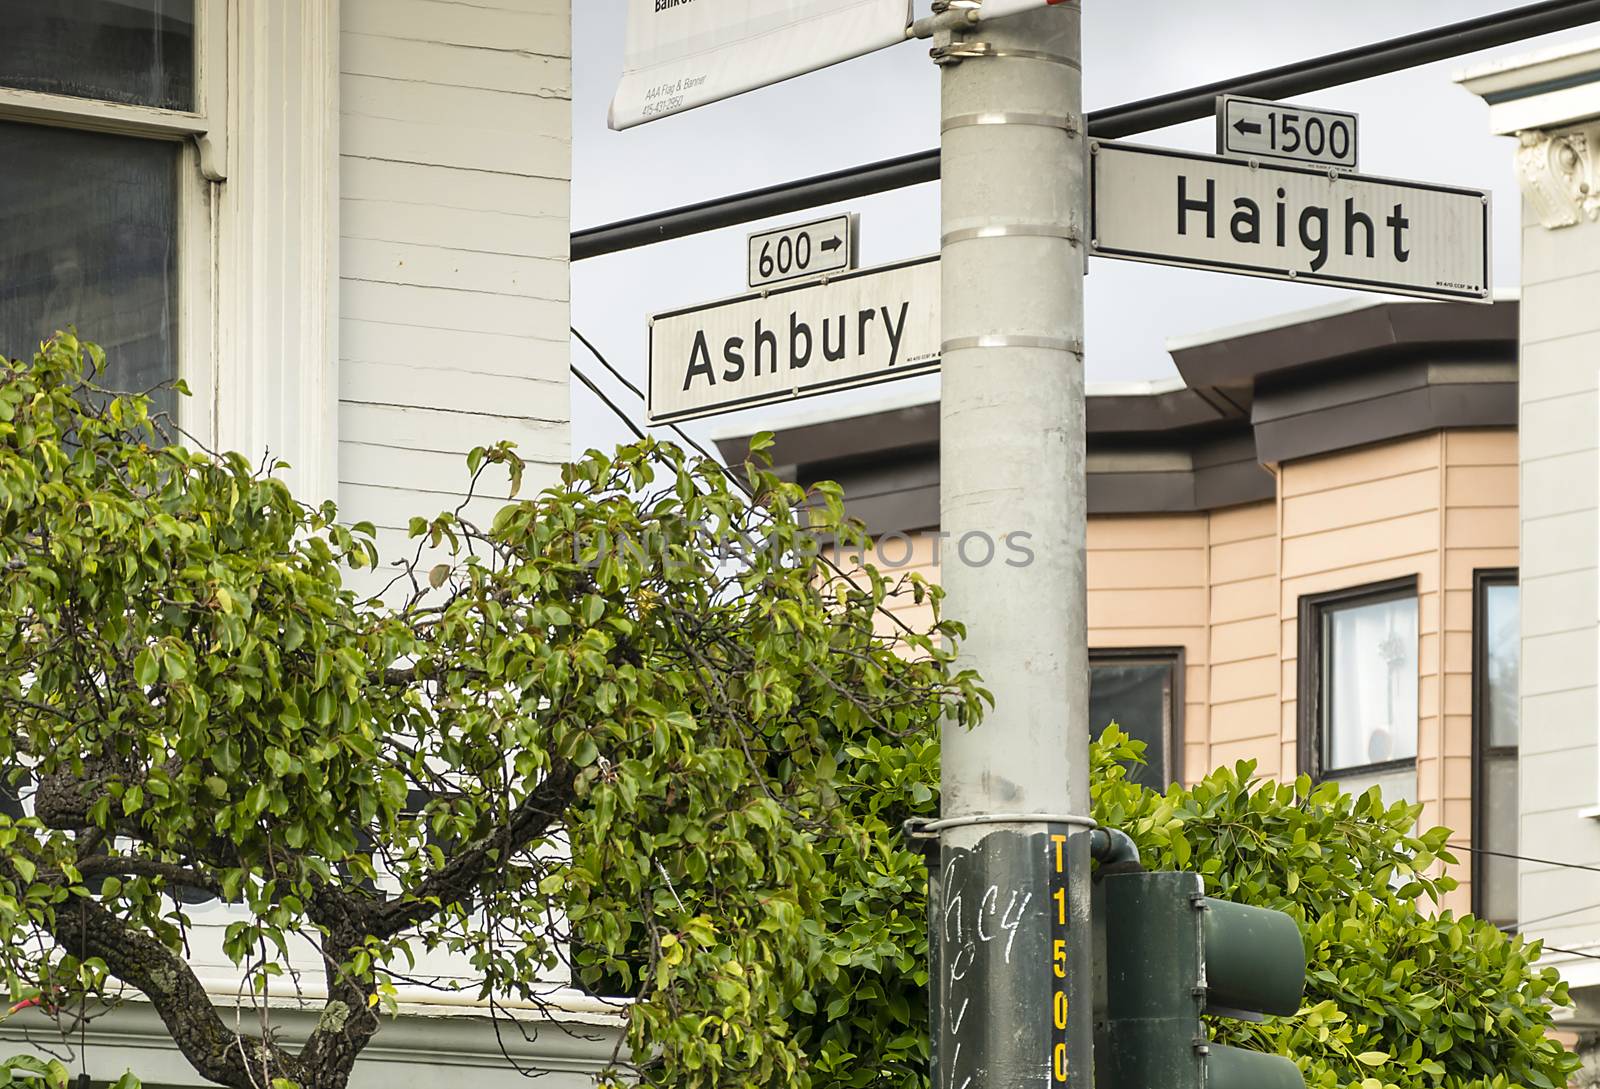 Haight and Ashbury in San Francisco. by rarrarorro